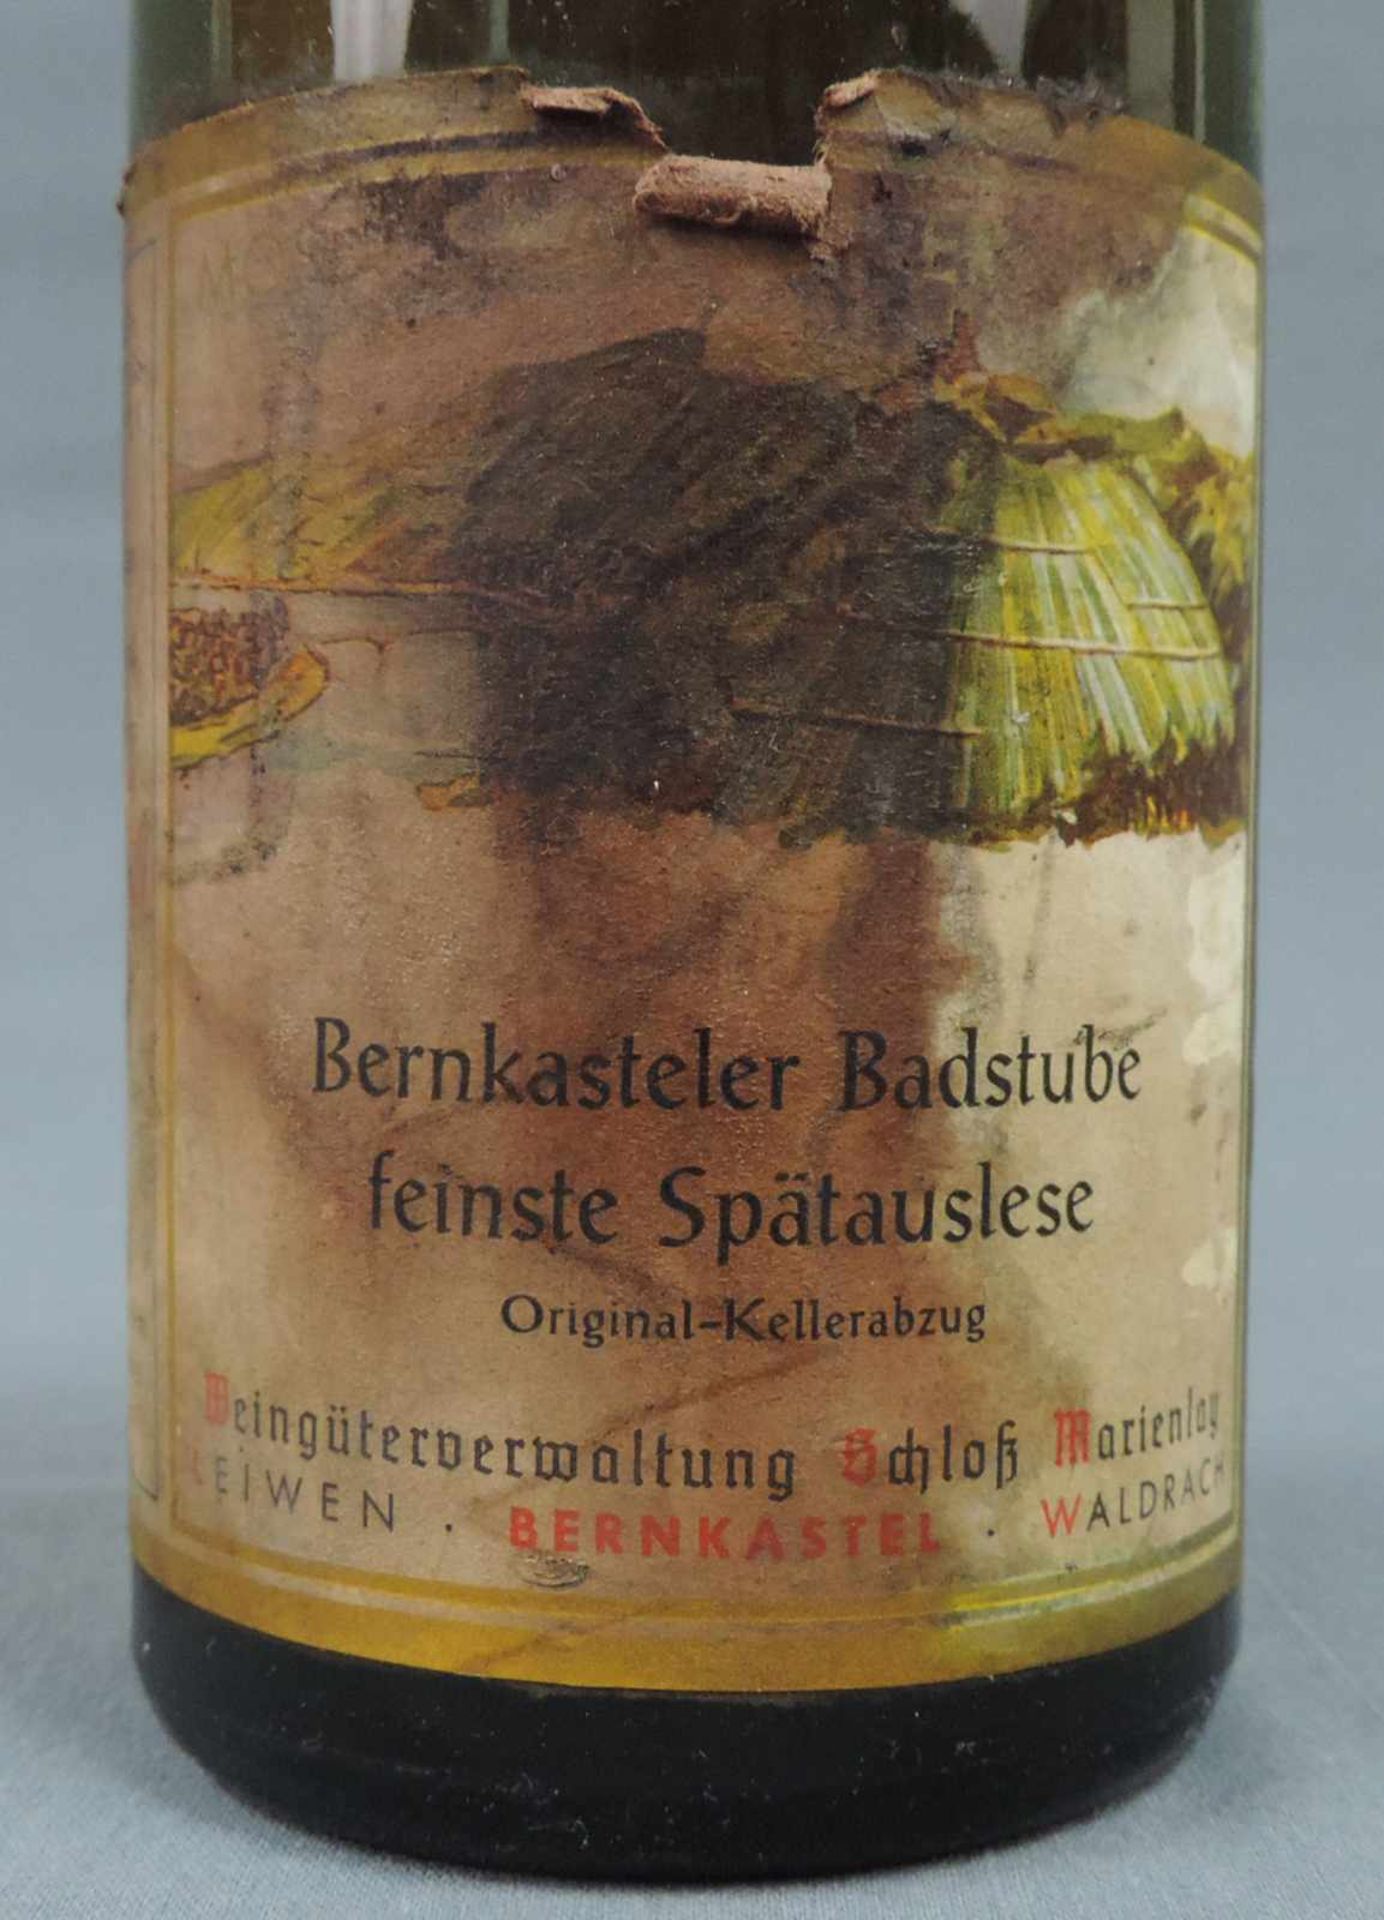 1964 Bernkastler Badstube feinste Spätauslese von Schloß Marienlay. Eine ganze Flasche Weißwein, - Image 3 of 8